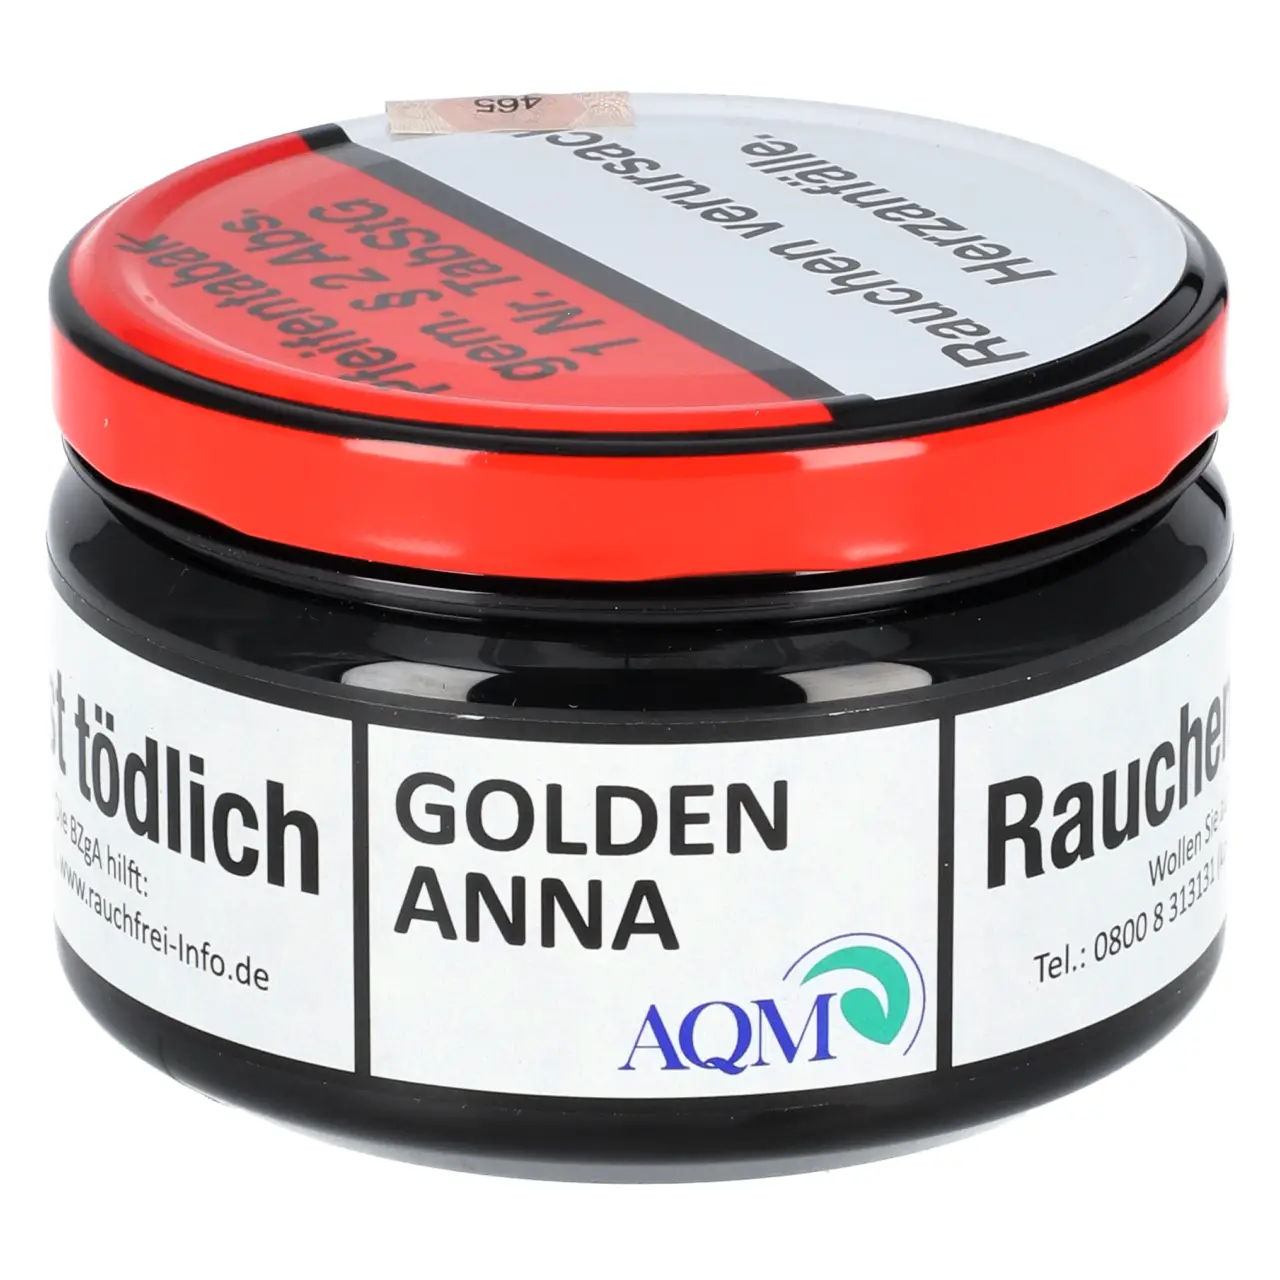 Aqua Mentha Pfeifentabak Golden Anna - 100g